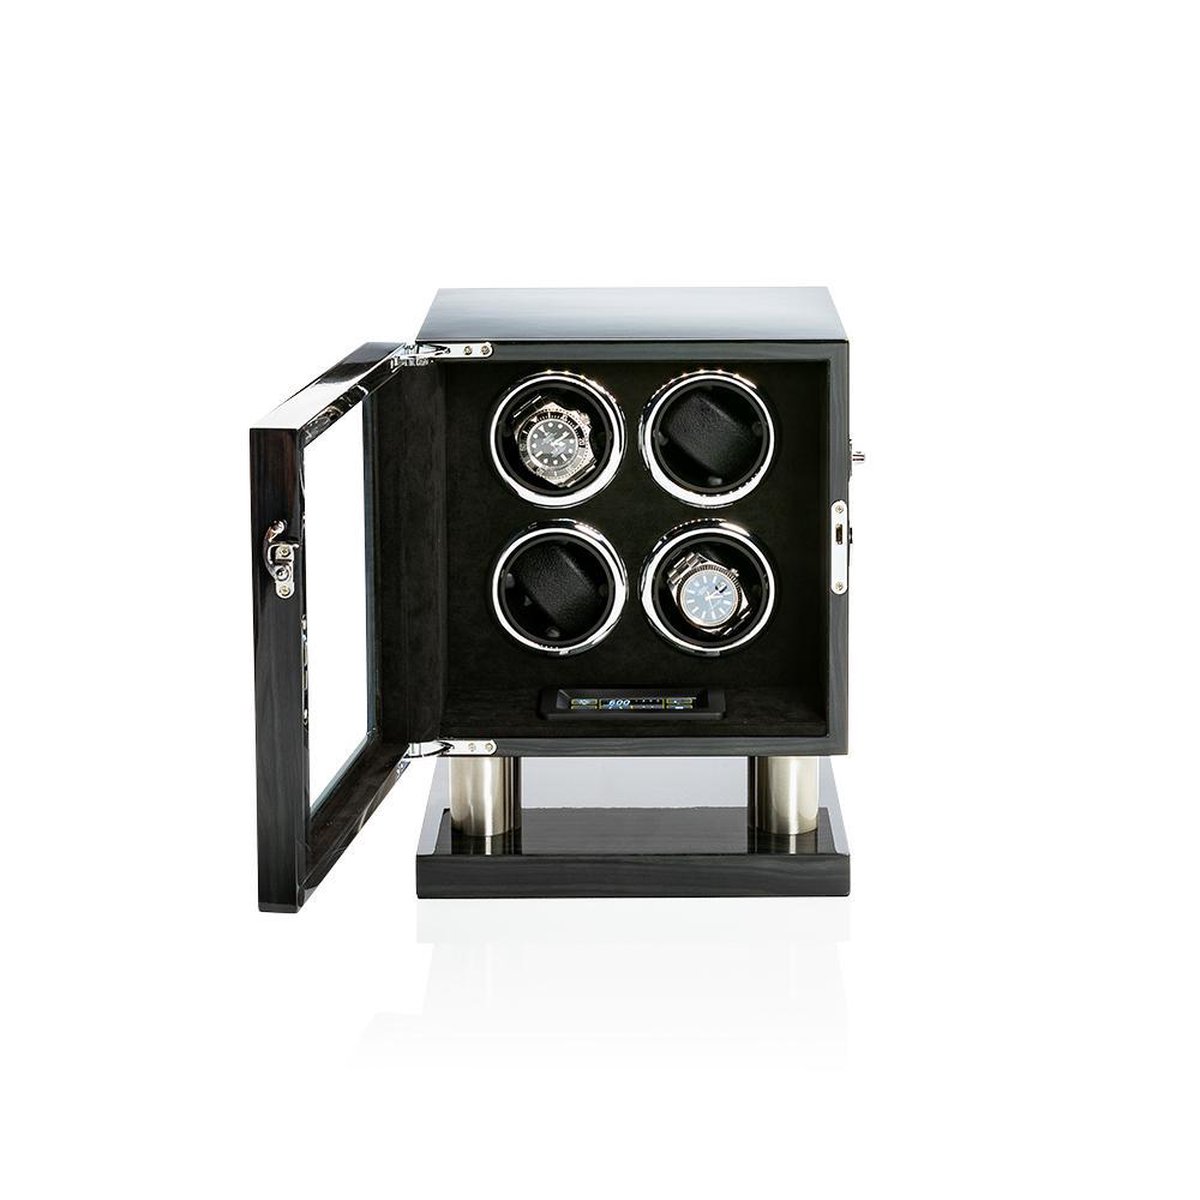 Watchwinder, Horloge winder box voor 4 automatische uurwerken